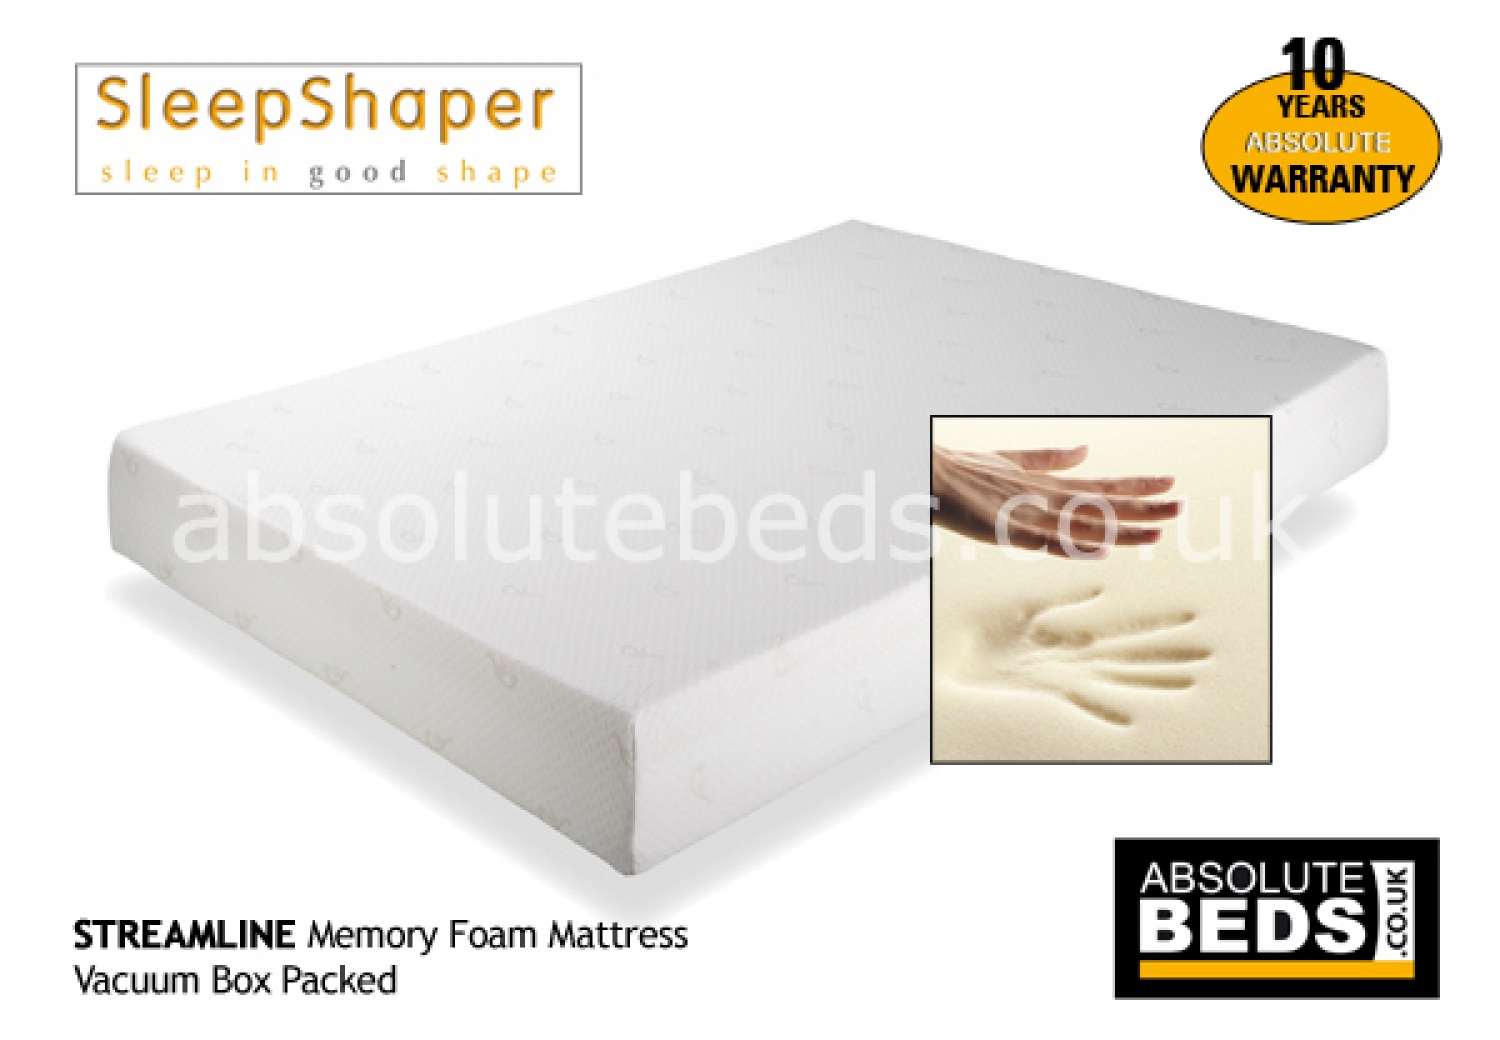 sleepshaper streamline memory foam mattress image